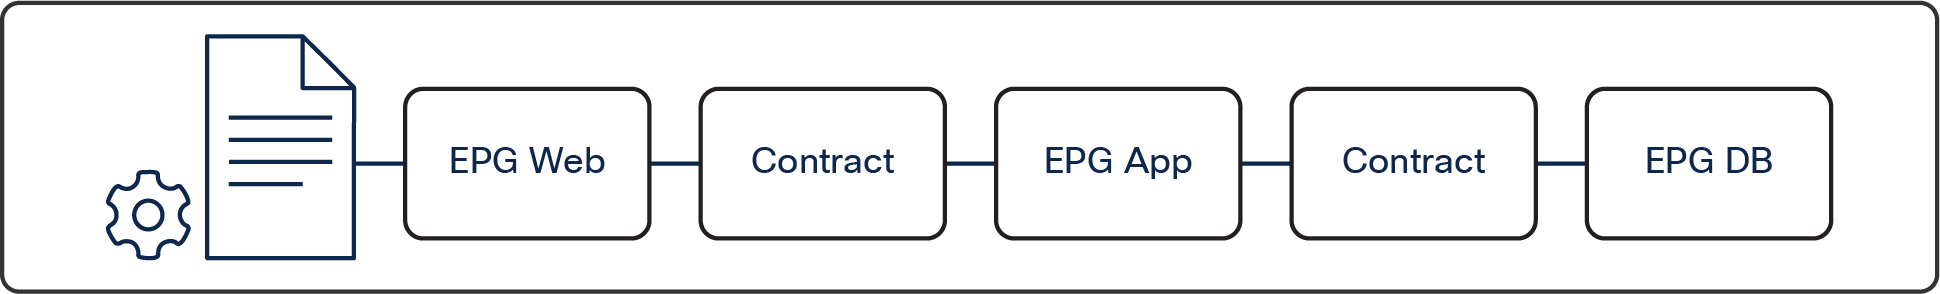 Cisco ACI EPG-based network model